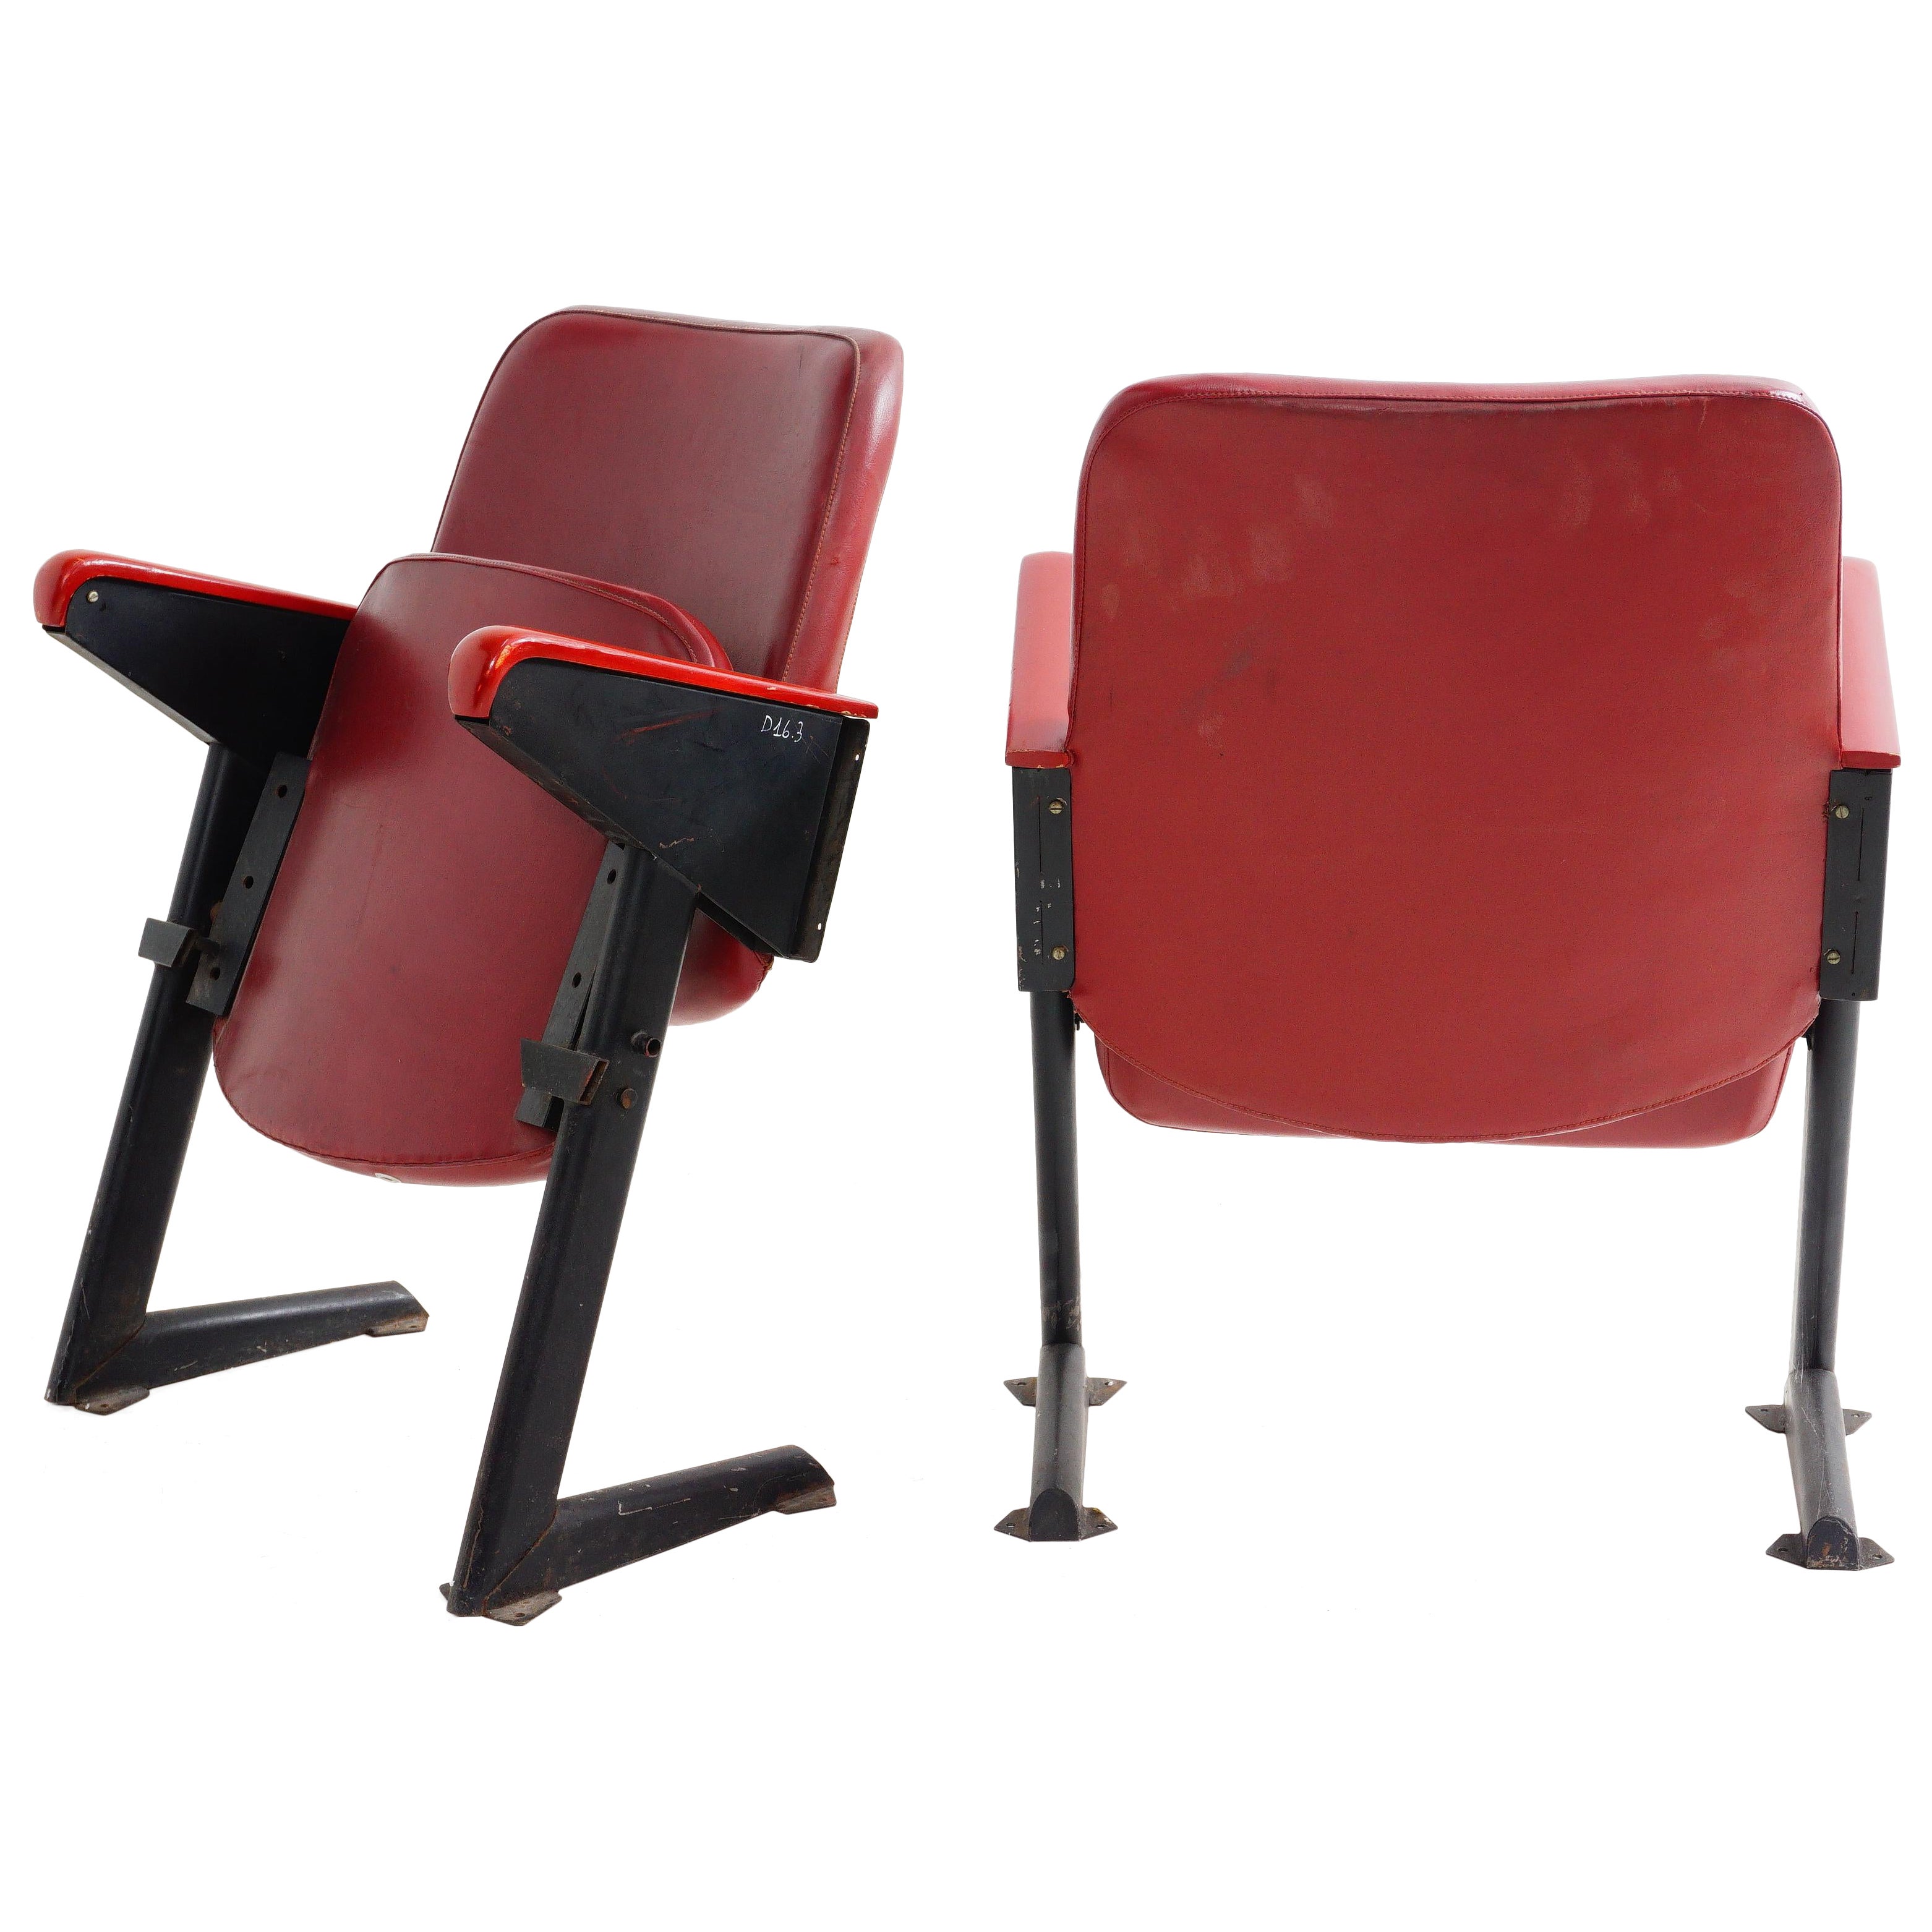 LV8 Cinema Chair by Gastone Rinaldi for Rima, 1950s